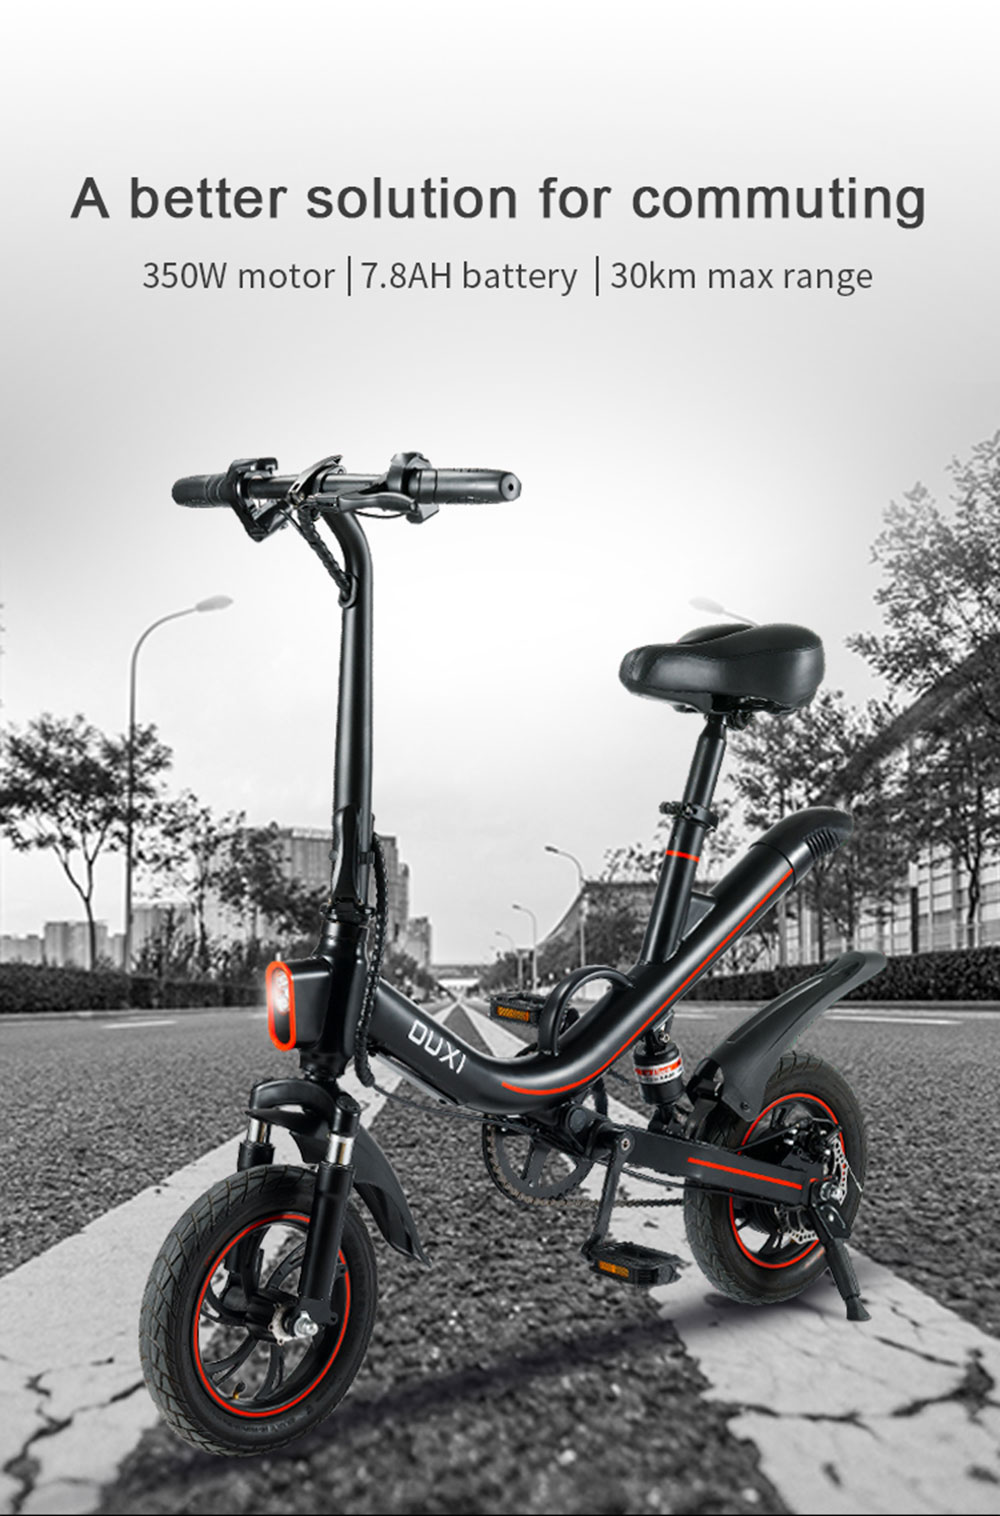 https://img.gkbcdn.com/s3/d/202206/OUXI-V1-Electric-Bike-350W-Motor-36V-7-8Ah-Battery-Black-507191-0.jpg